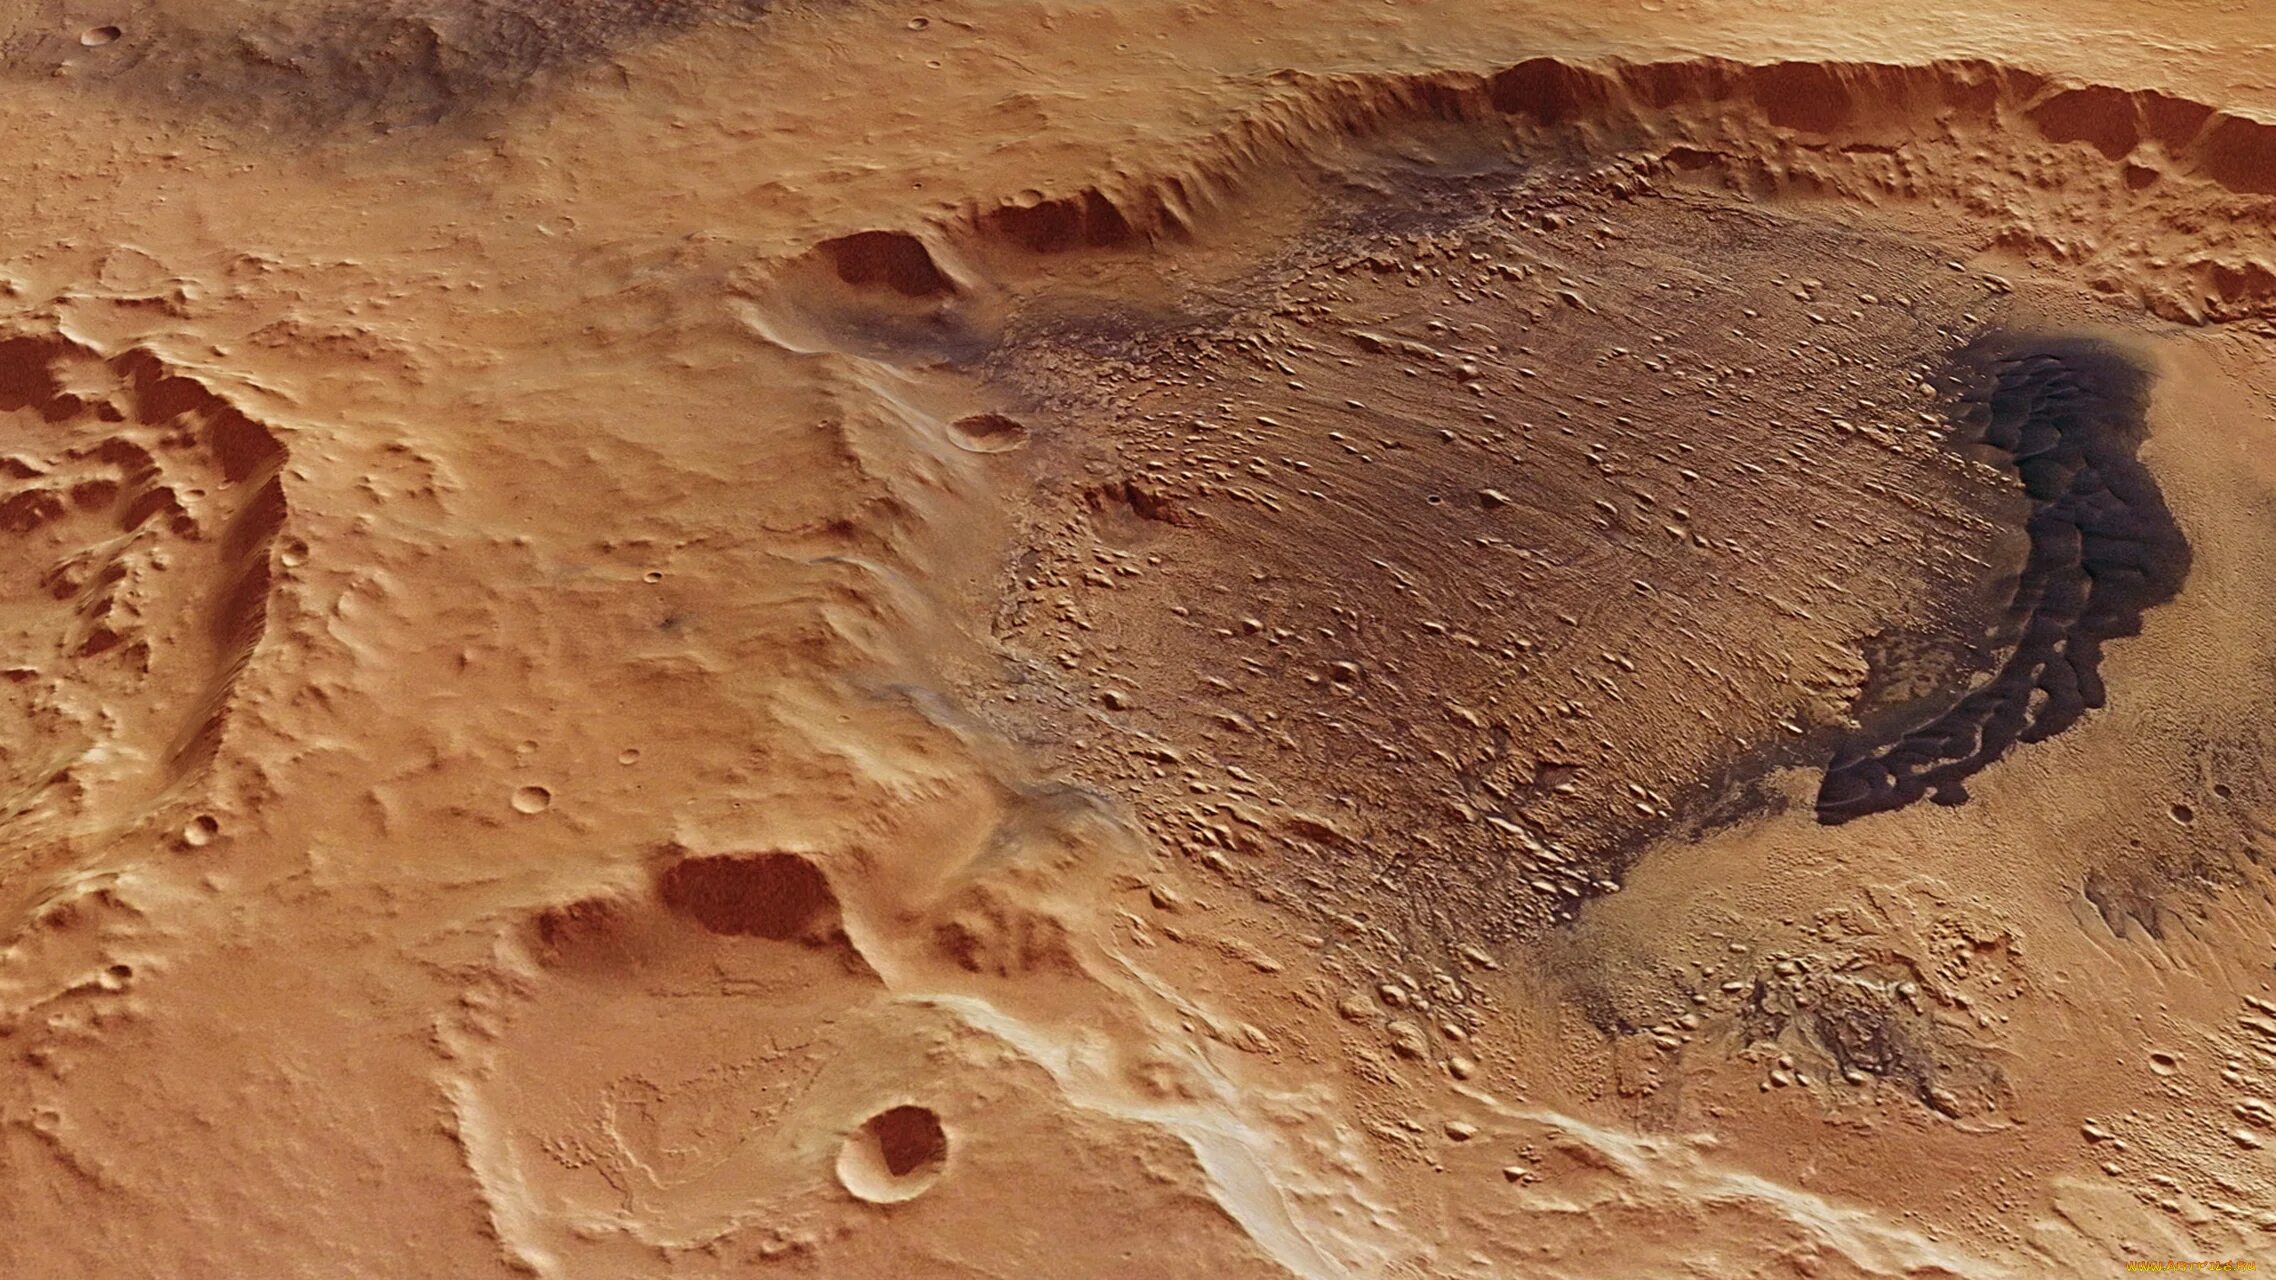 Марс, Планета кратеры. Марс поверхность планеты. Поверхность и рельеф планеты Марс. Кратеры на Марсе. Вода на поверхности марса